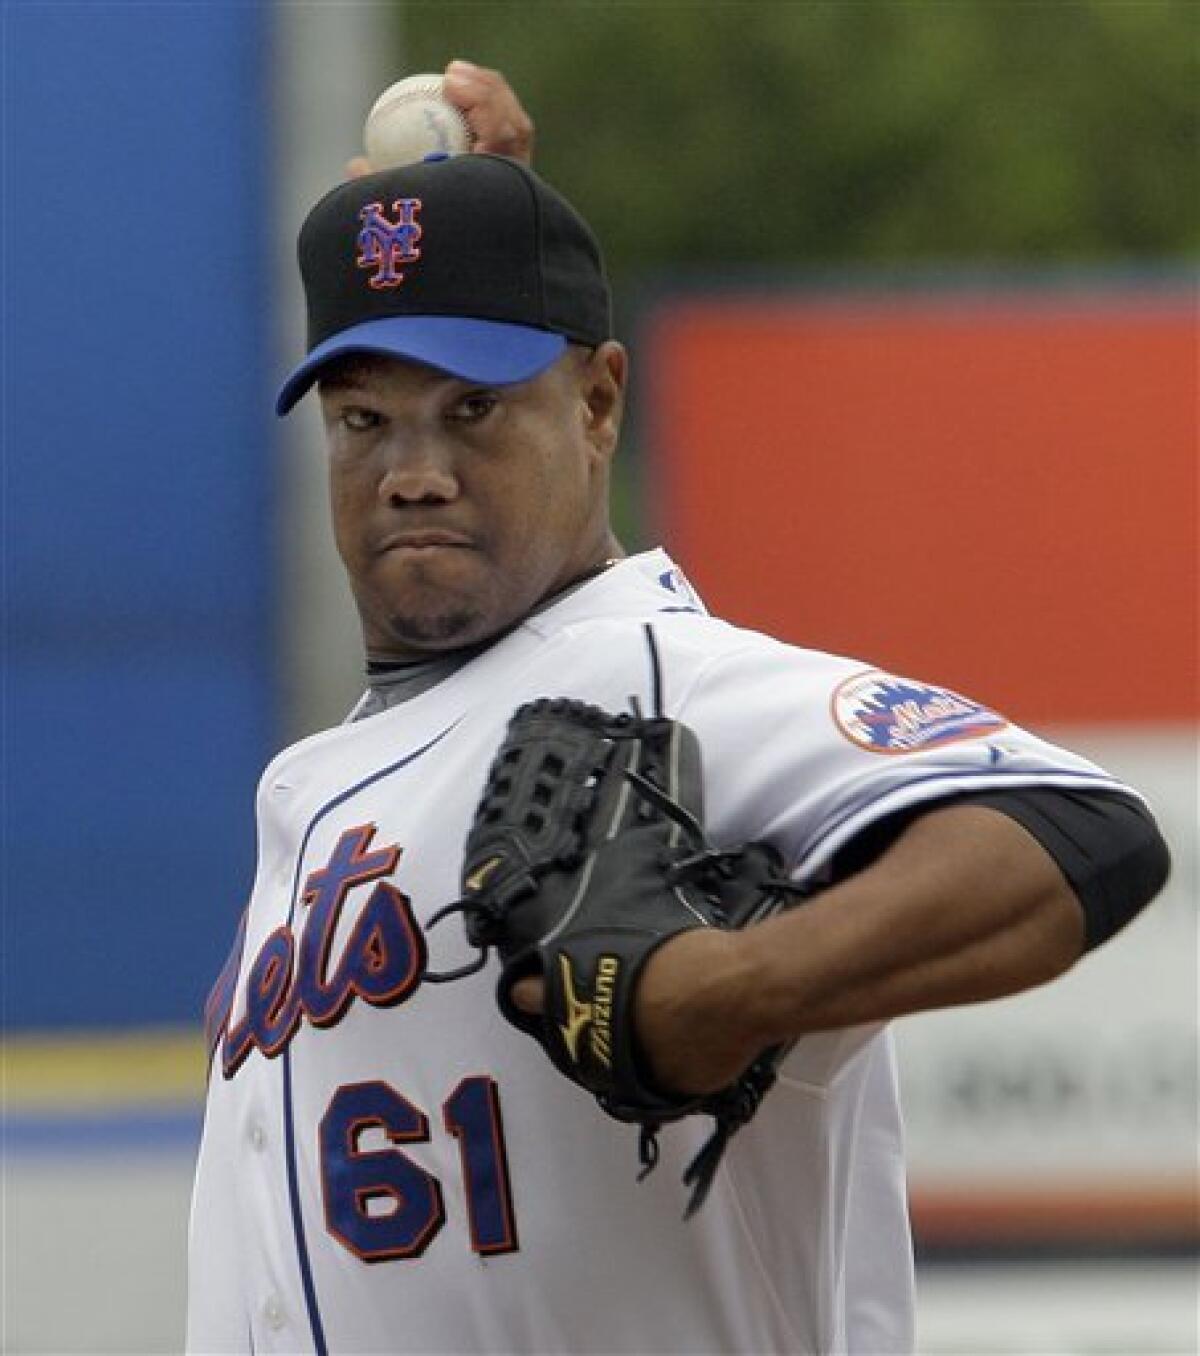 One Time New York Mets Pitcher: Livan Hernandez (2009)